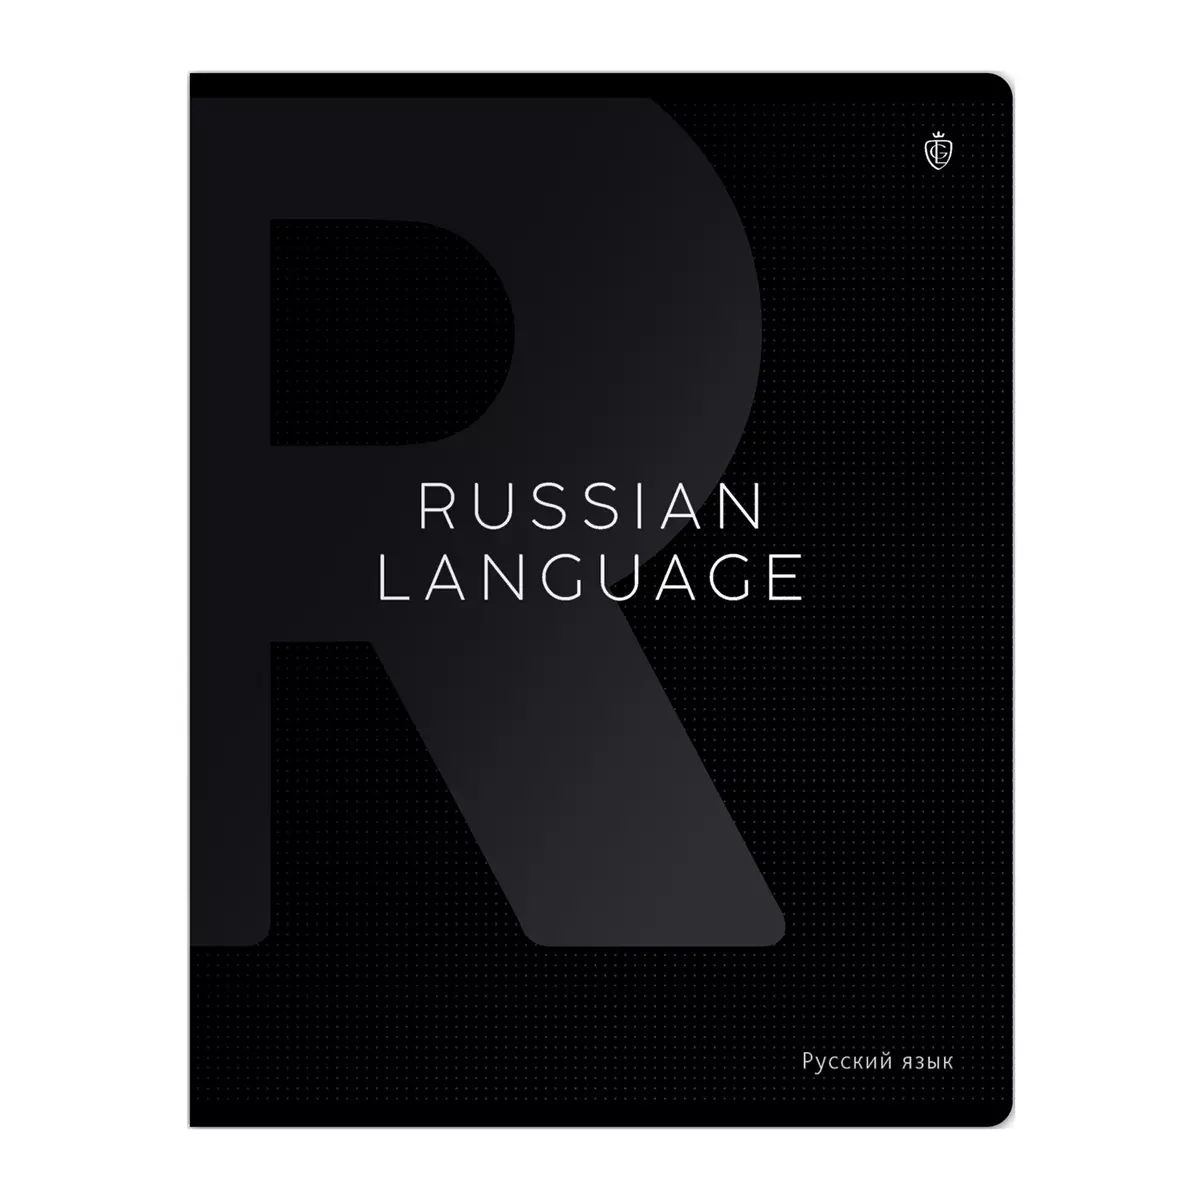 Тетрадь по Русскому языку, 48 листов, Greenwich Line Сolor black, софт-тач